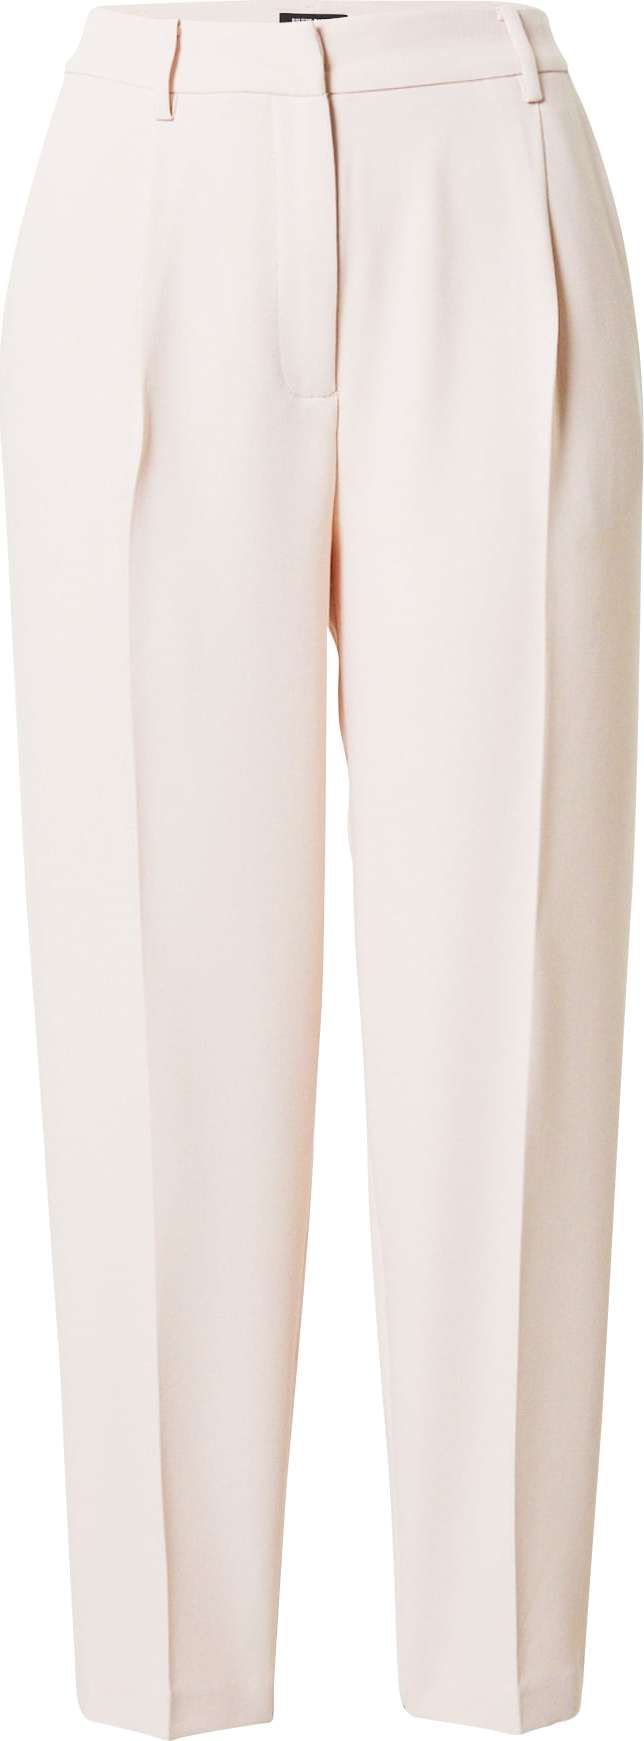 Kalhoty se sklady v pase 'Cindy Dagny' Bruuns Bazaar fialová